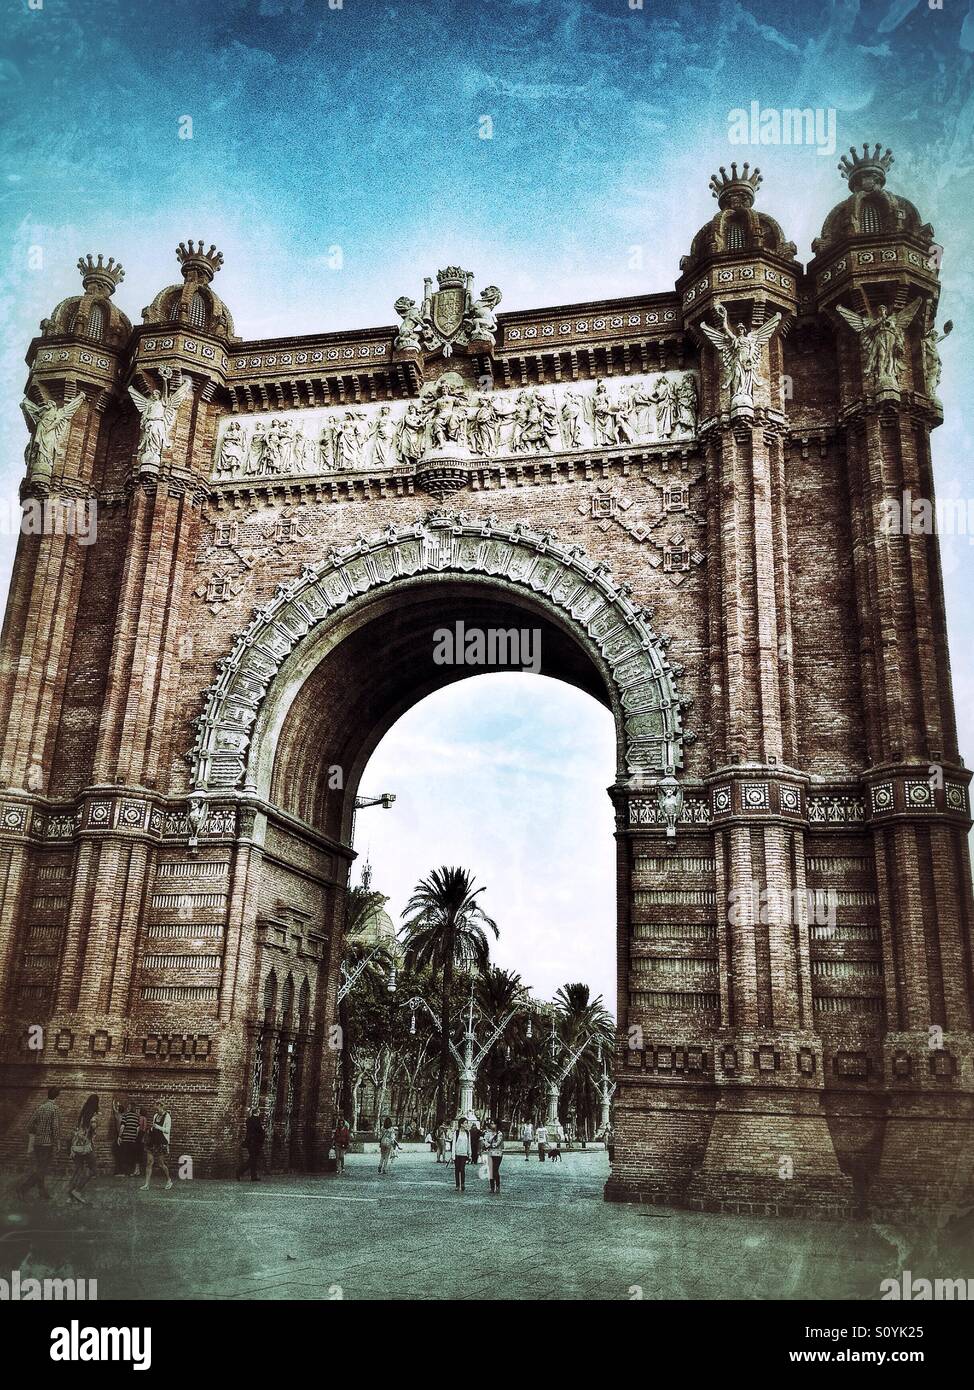 Arc de Triomf in Barcelona, Spain Stock Photo